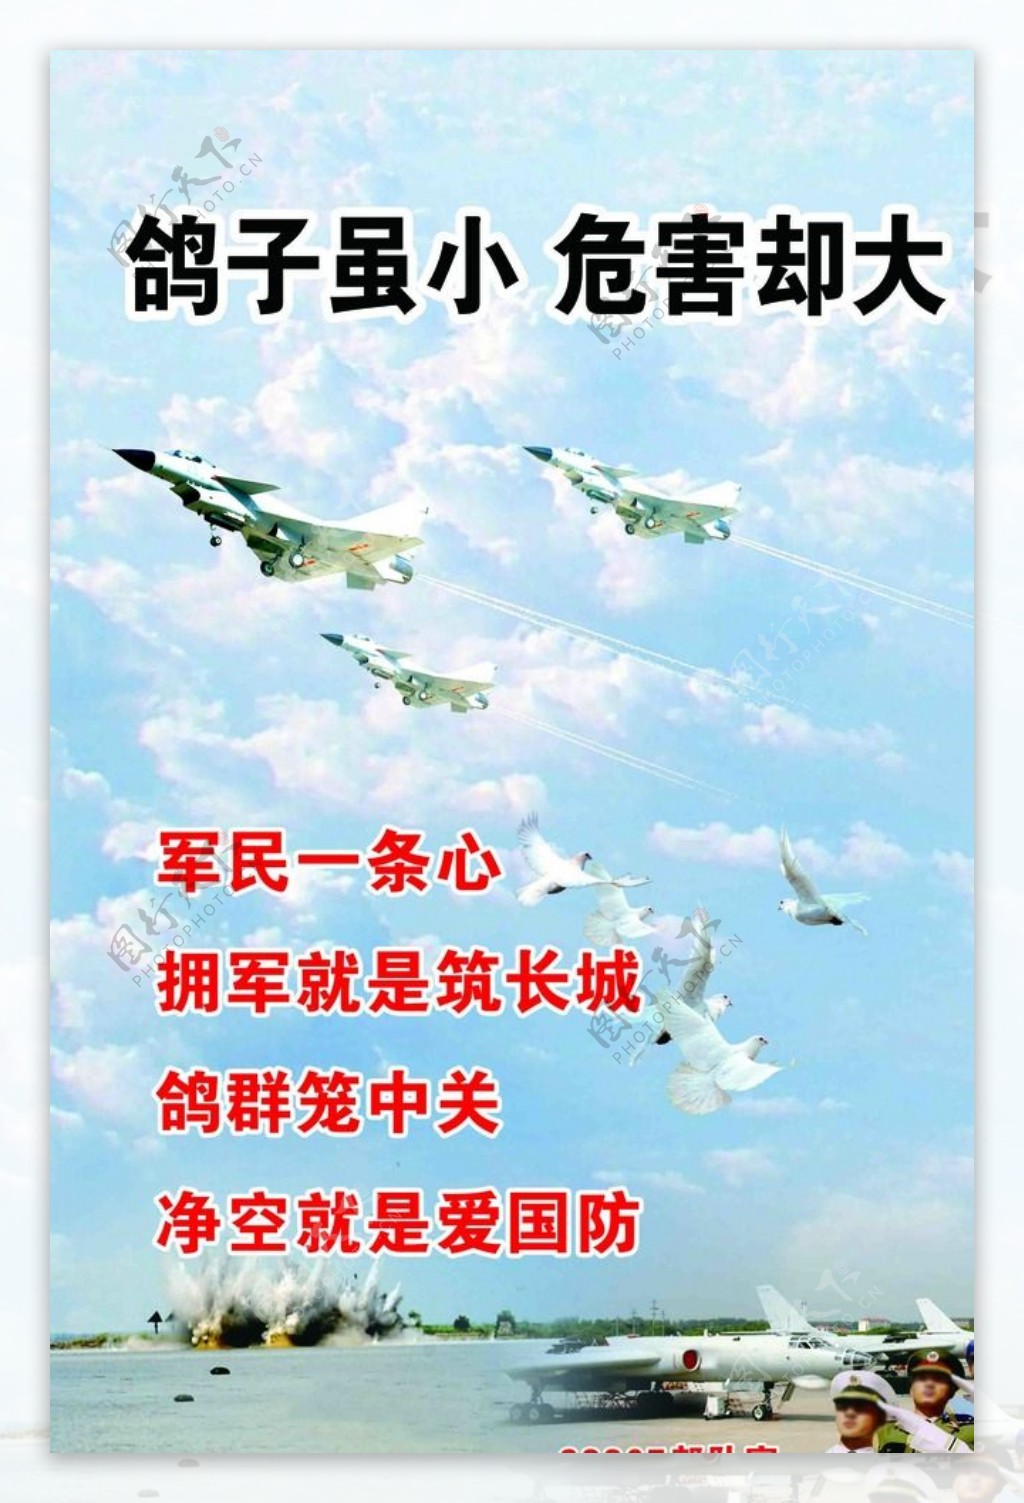 鸽子军人飞机版面素材内容海报